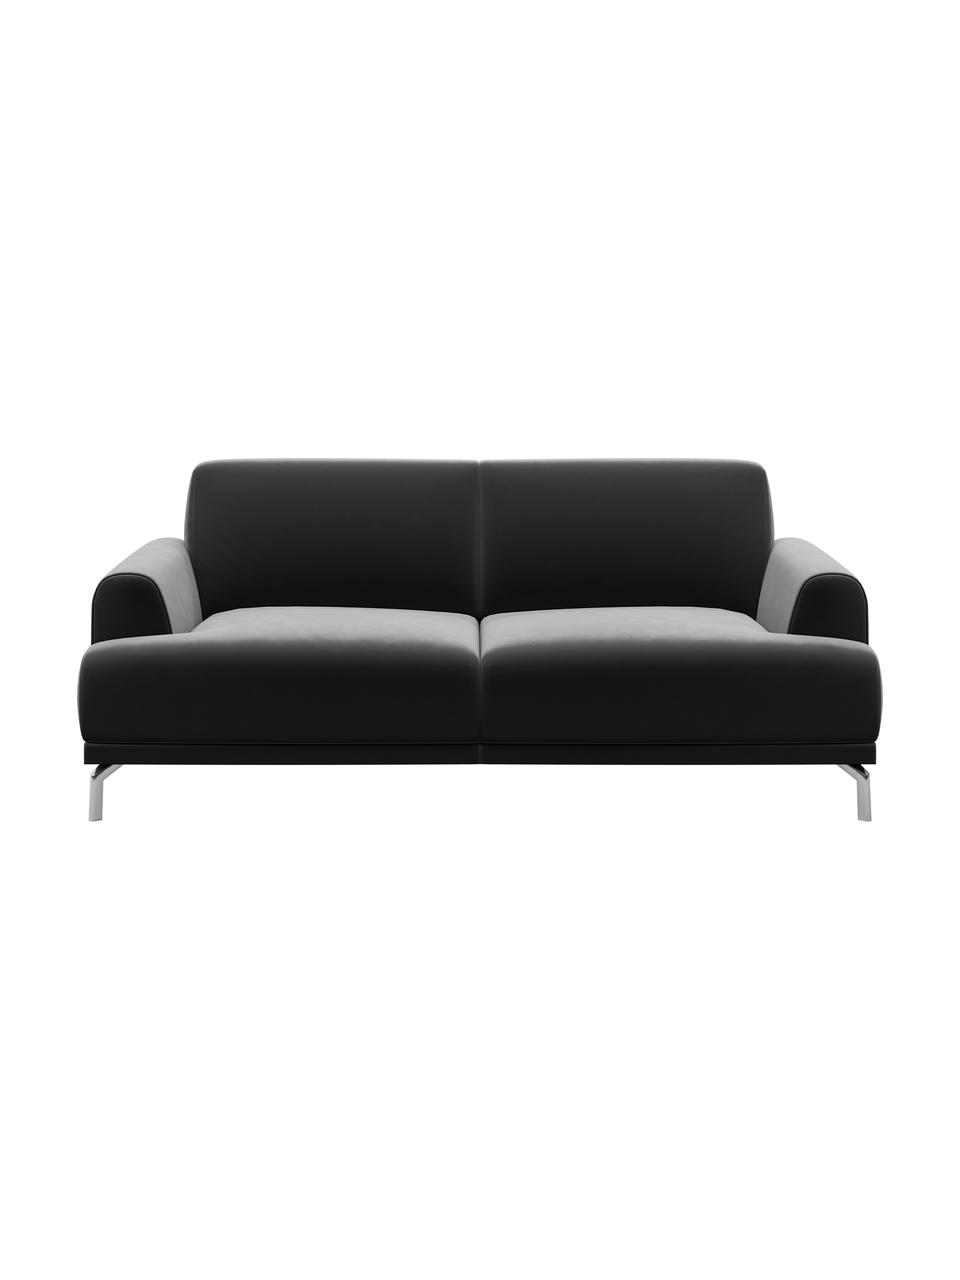 Sofa z aksamitu Puzo (2-osobowa), Tapicerka: 100% aksamit poliestrowy,, Nogi: metal lakierowany, Ciemny szary, S 170 x G 84 cm